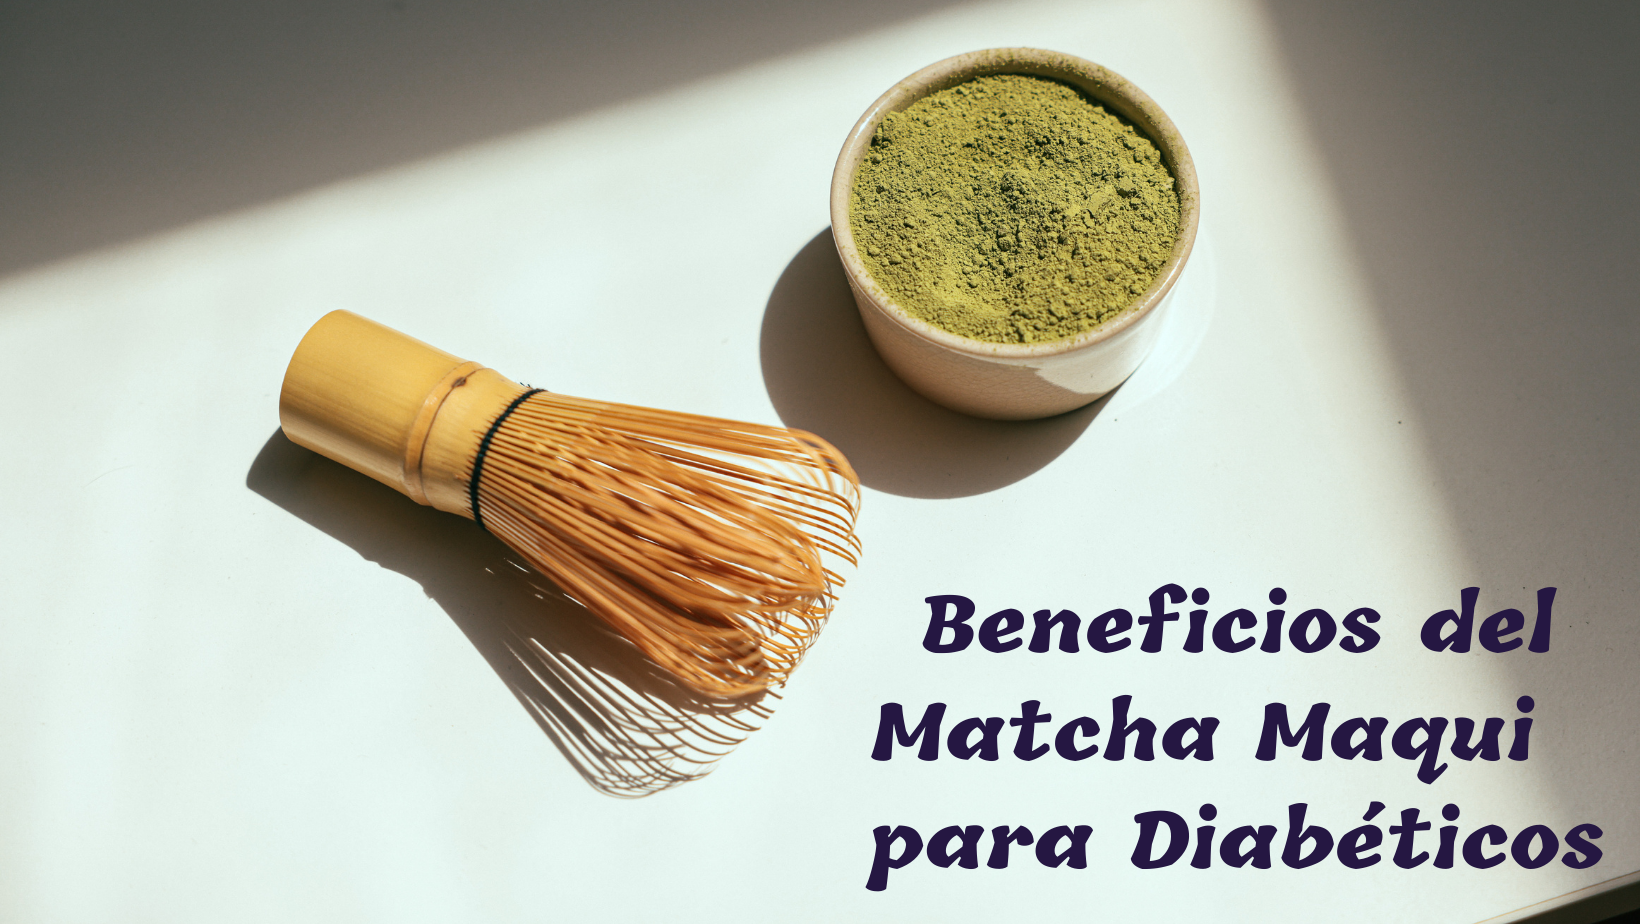 Beneficios del MatchaMaqui para Diabéticos